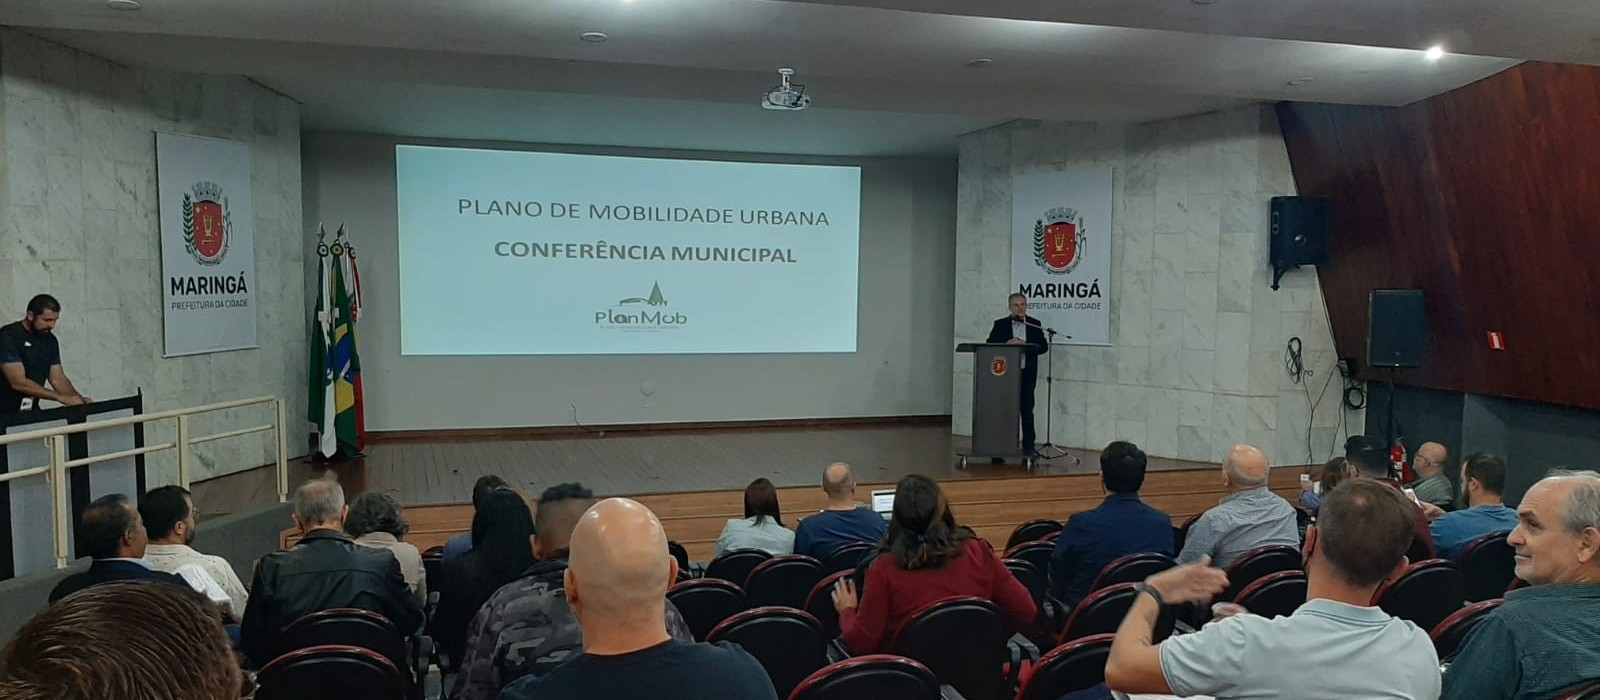 Conferência marca a apresentação do Plano de Mobilidade Urbana de Maringá